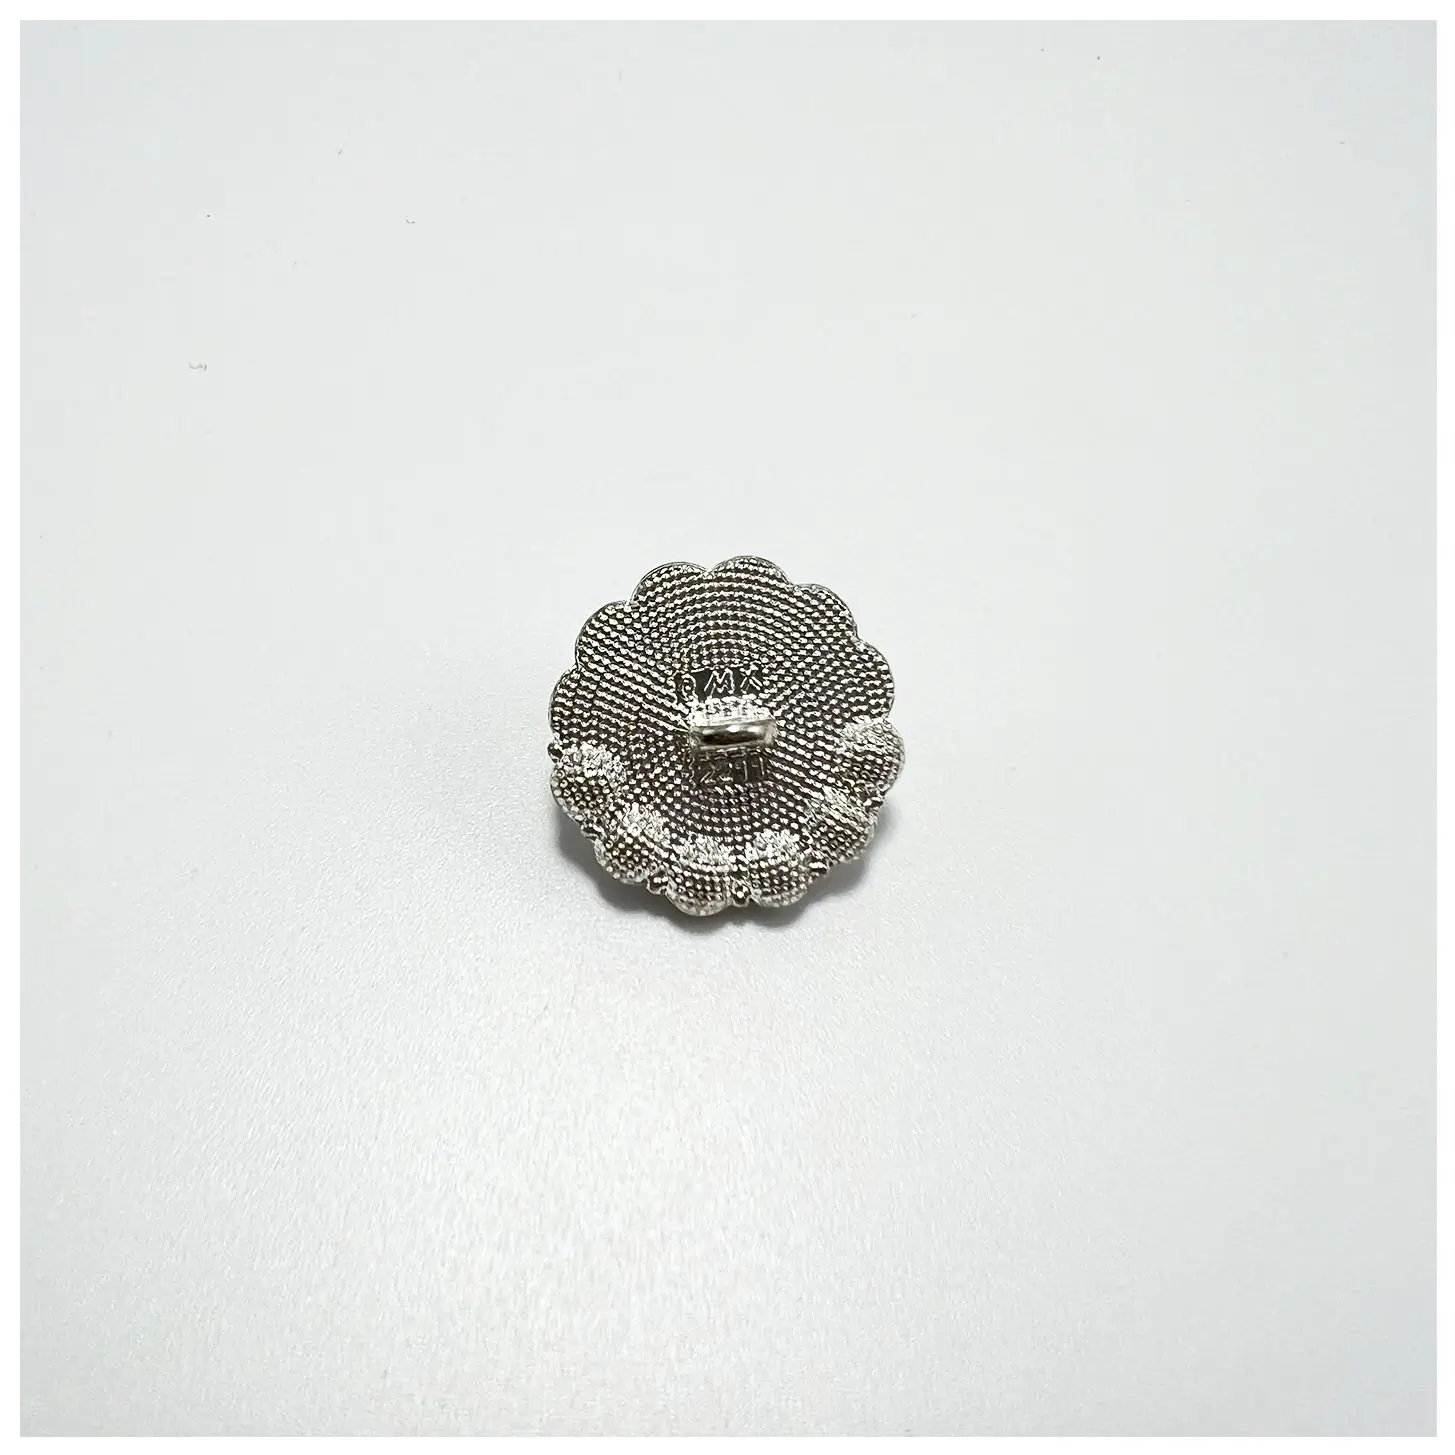 Özel High-End siyah ve beyaz renk kontrast elmas dekoratif Metal düğmeler toptan